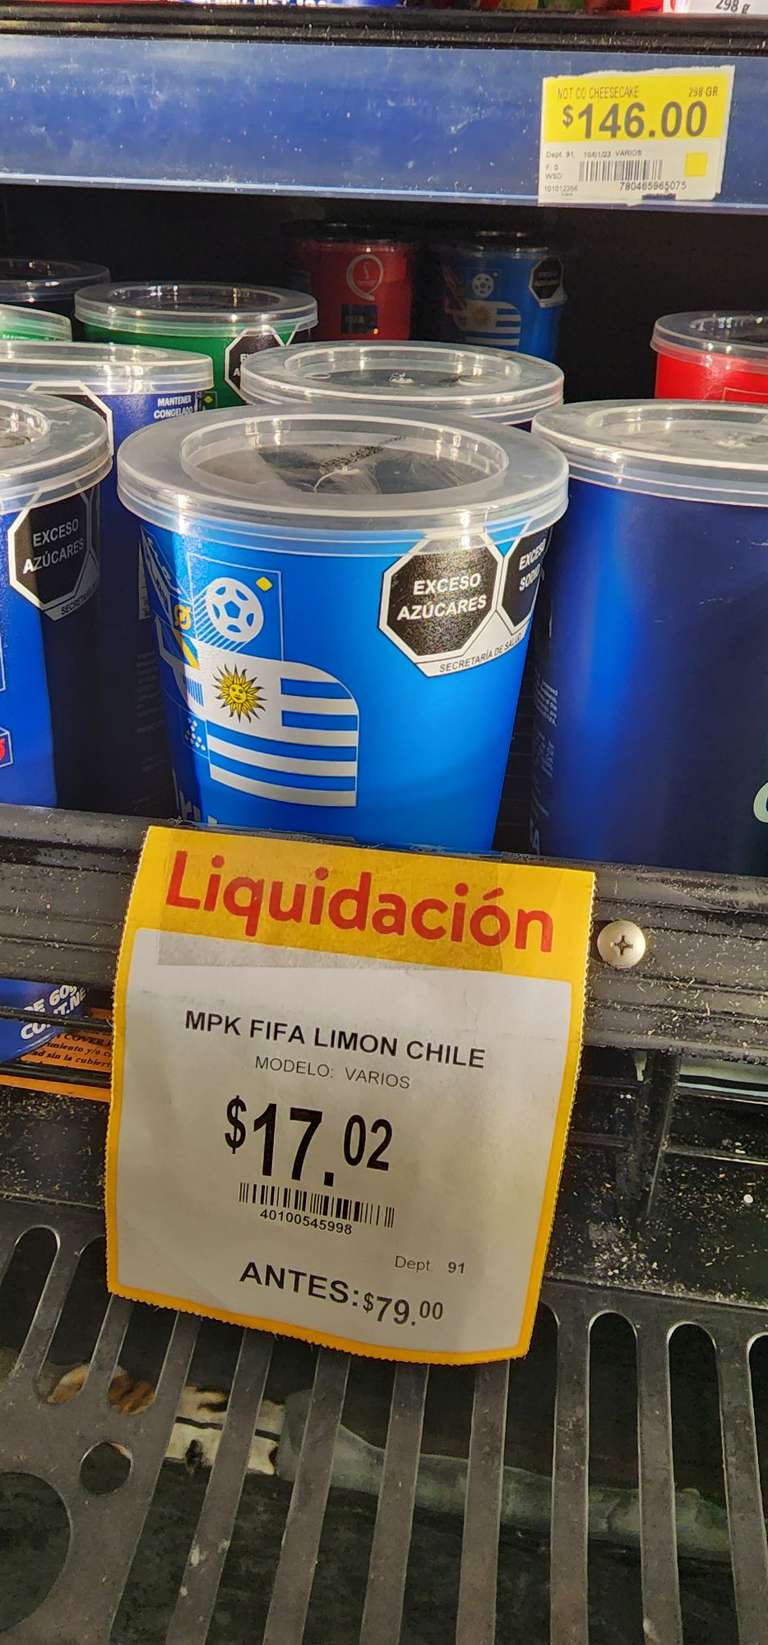 Walmart Express: MPK FIFA paleta helada limón chile